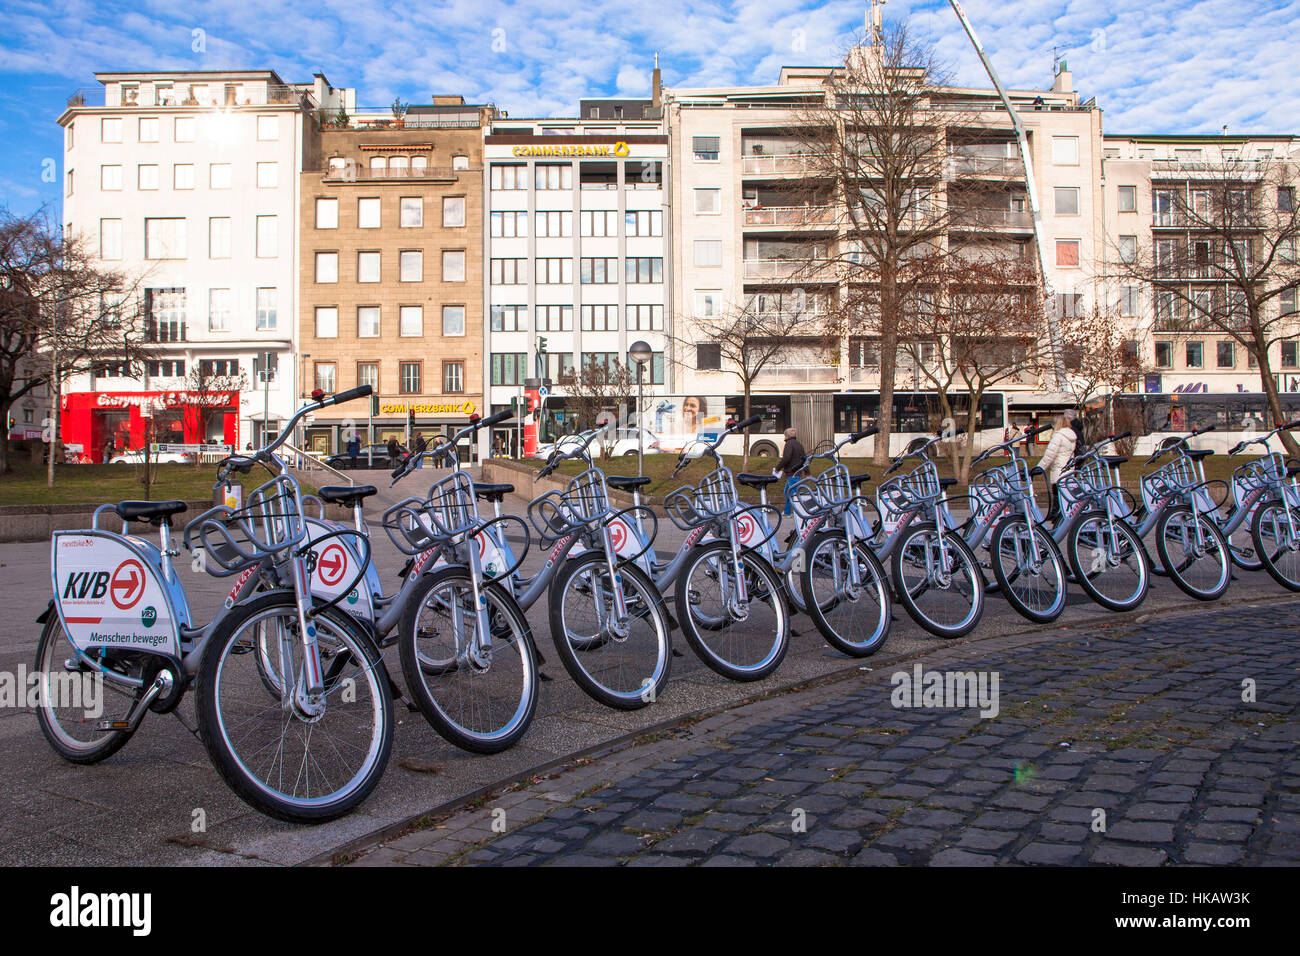 Germania, Colonia, biciclette a noleggio della società Koelner Verkehrsbetriebe KVB (Colonia azienda di trasporto pubblico) Foto Stock